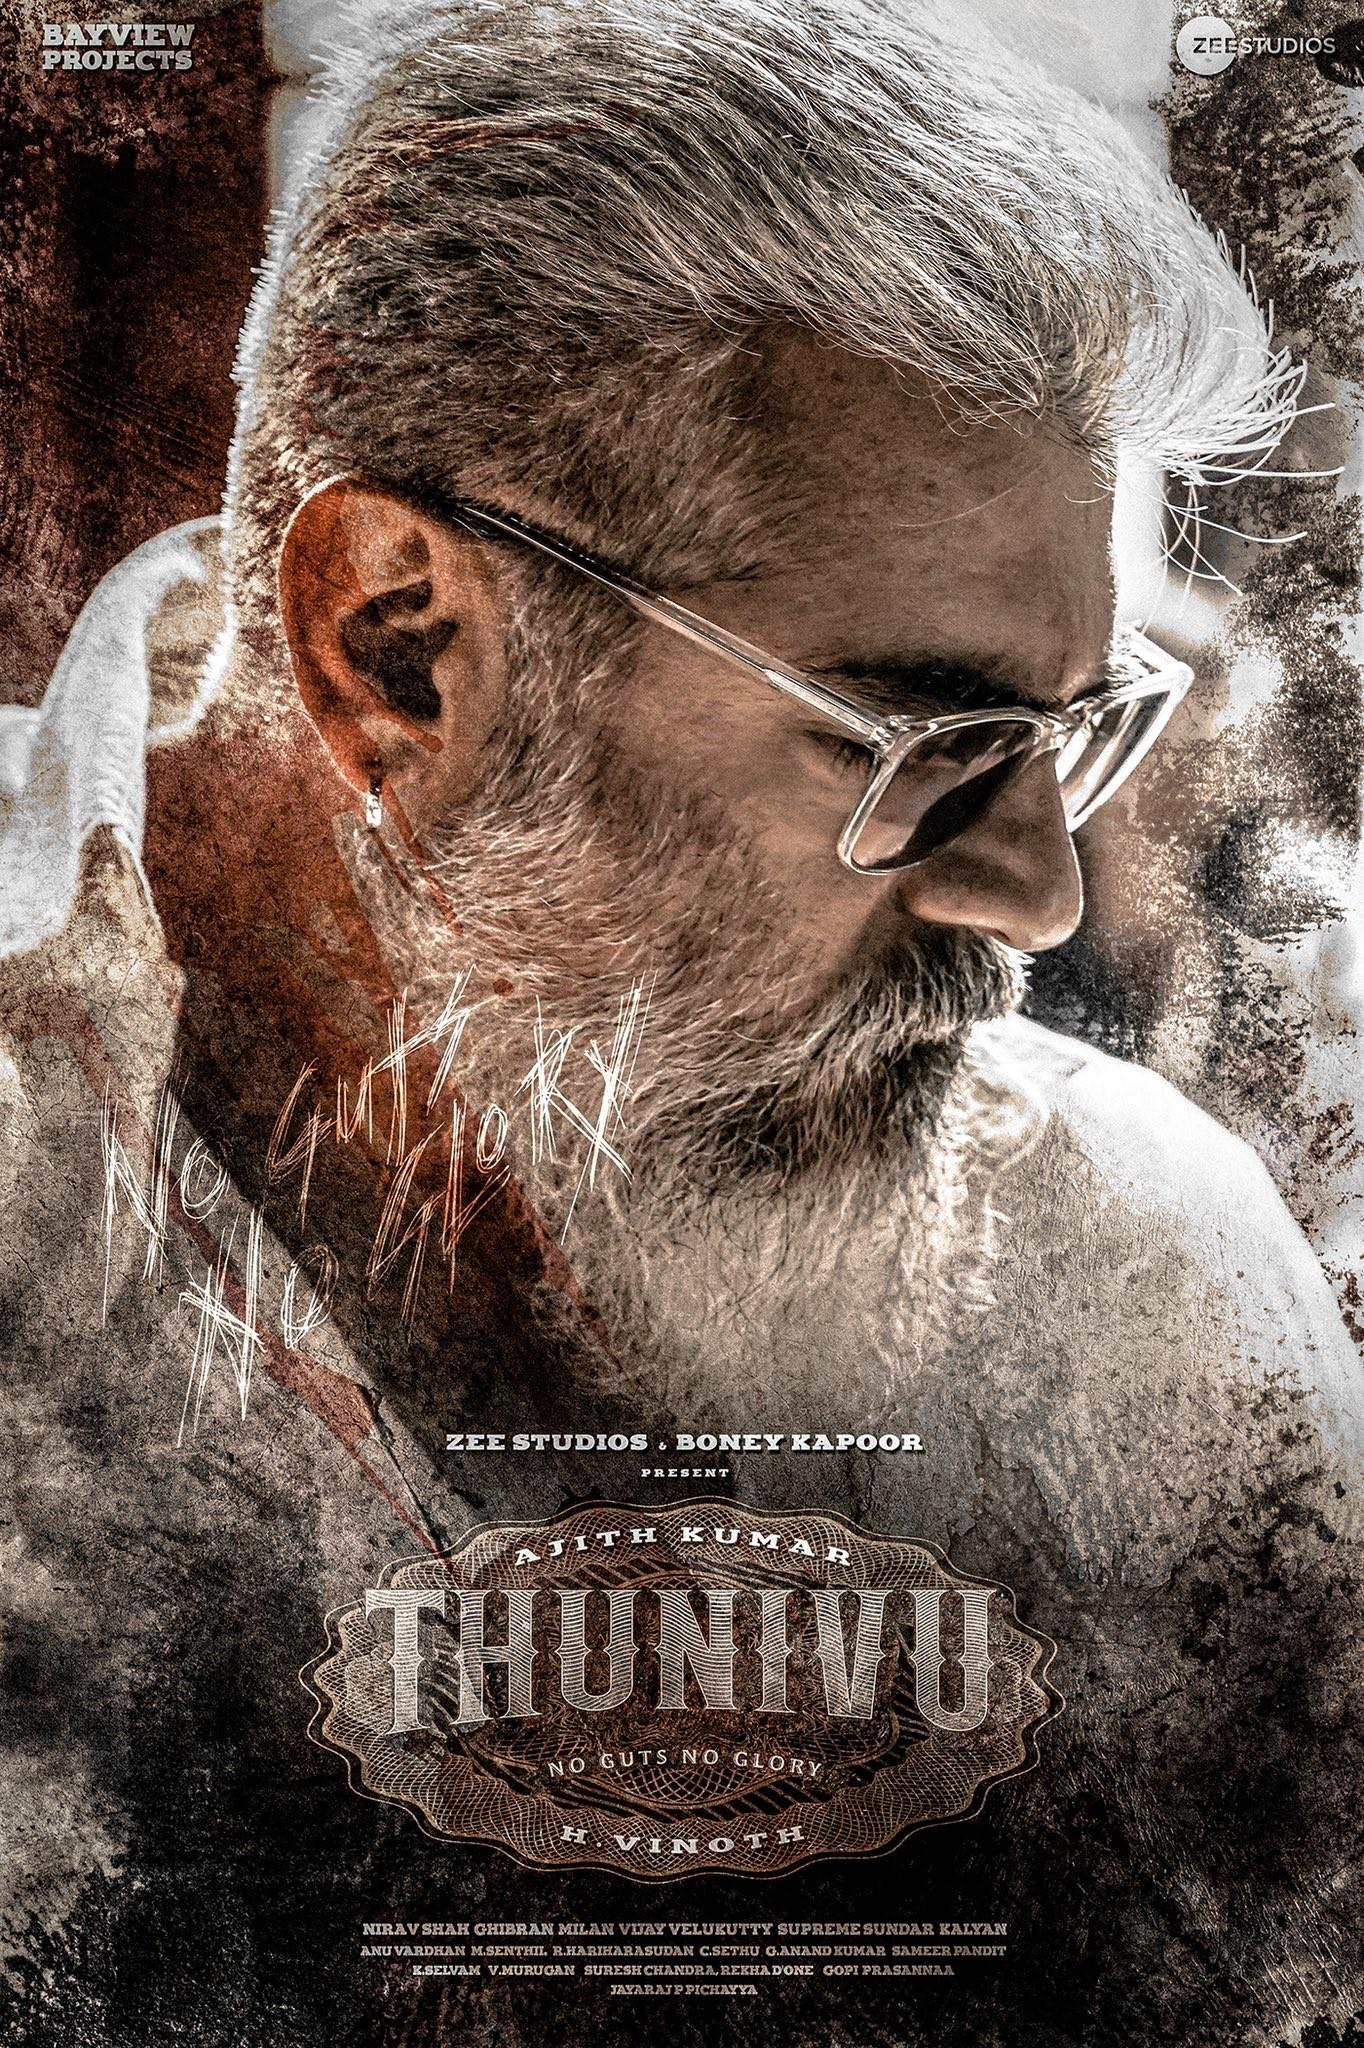 thunivu movie review tamil